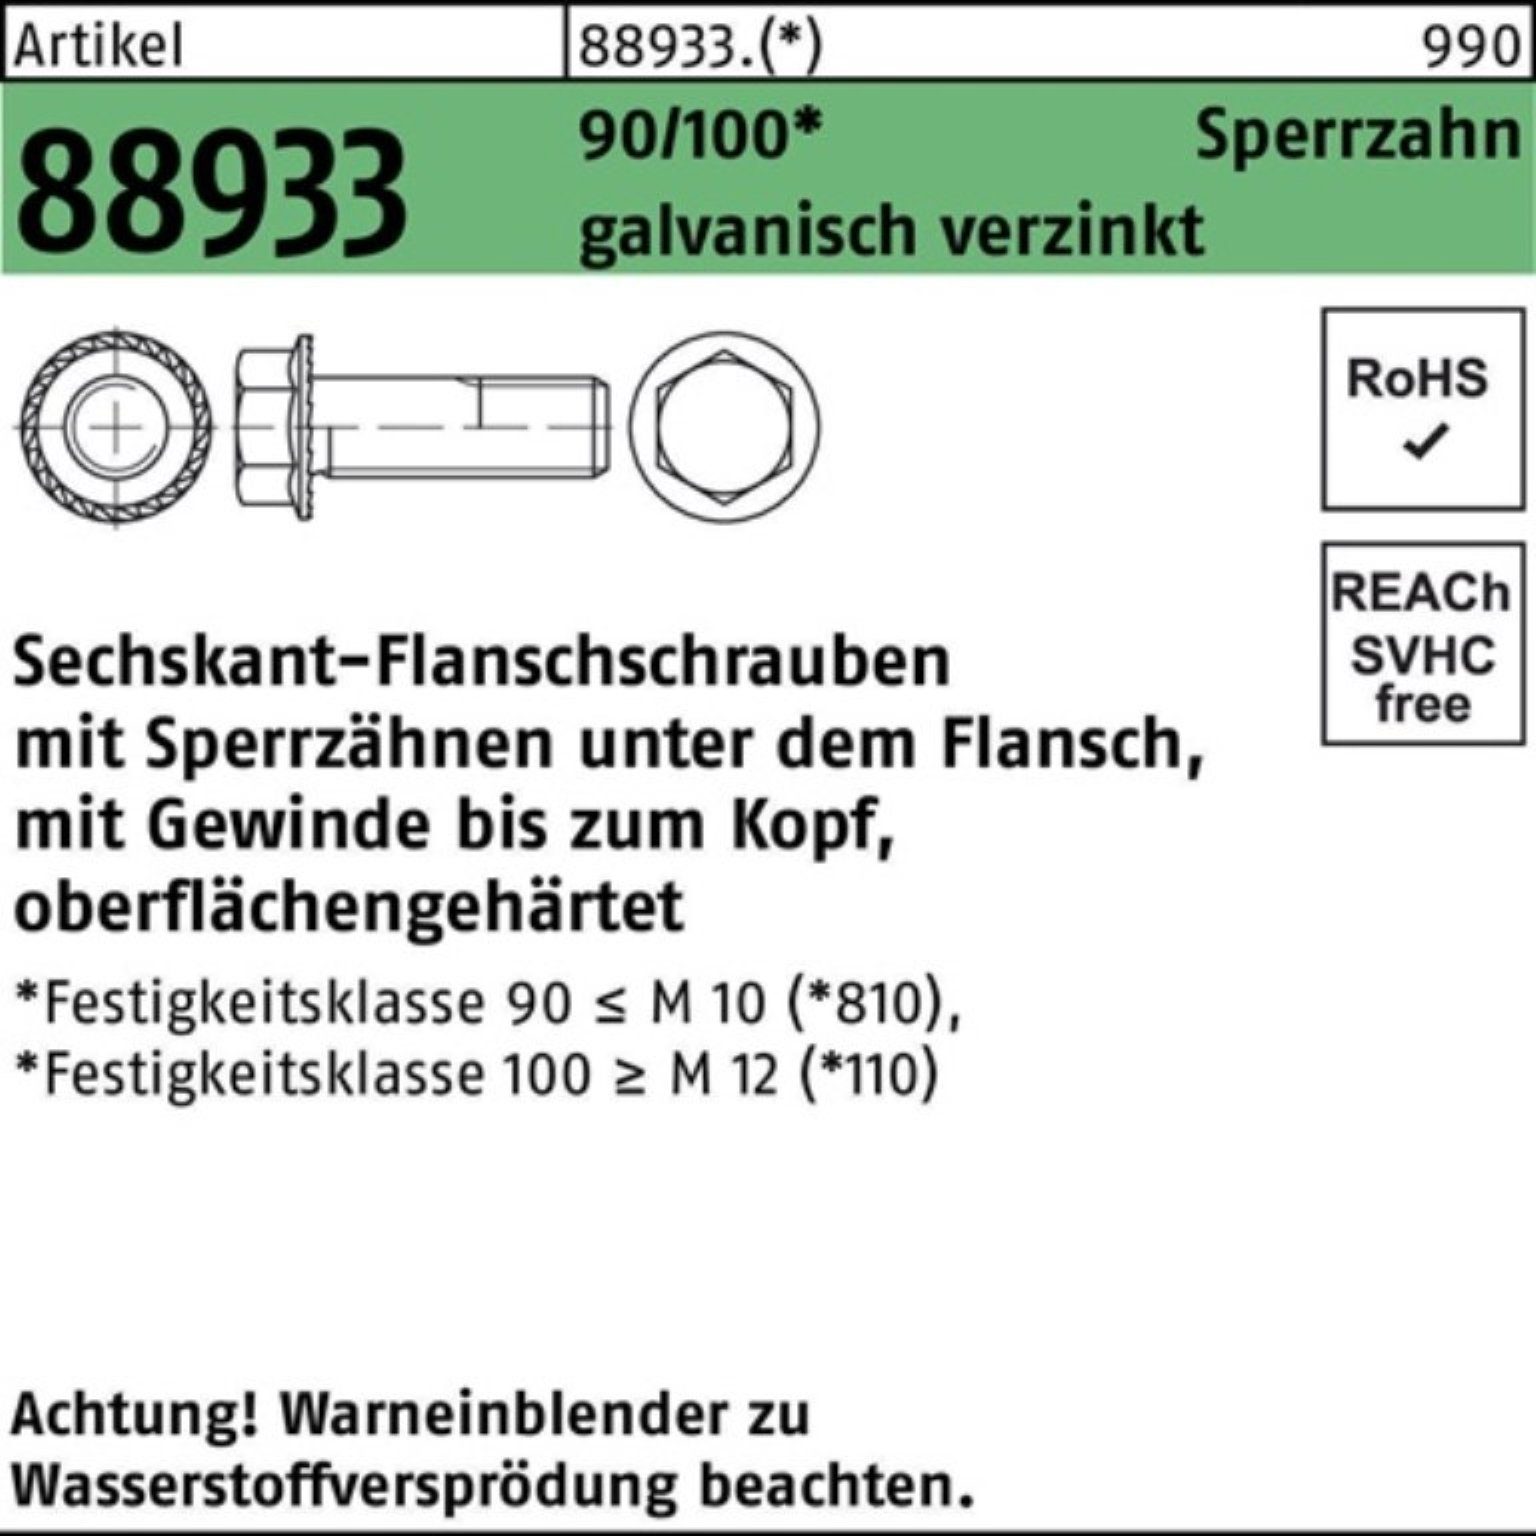 Schraube Sechskantflanschschraube 88933 M10x20 VG R 200er Sperrz. Reyher Pack 90/100 g